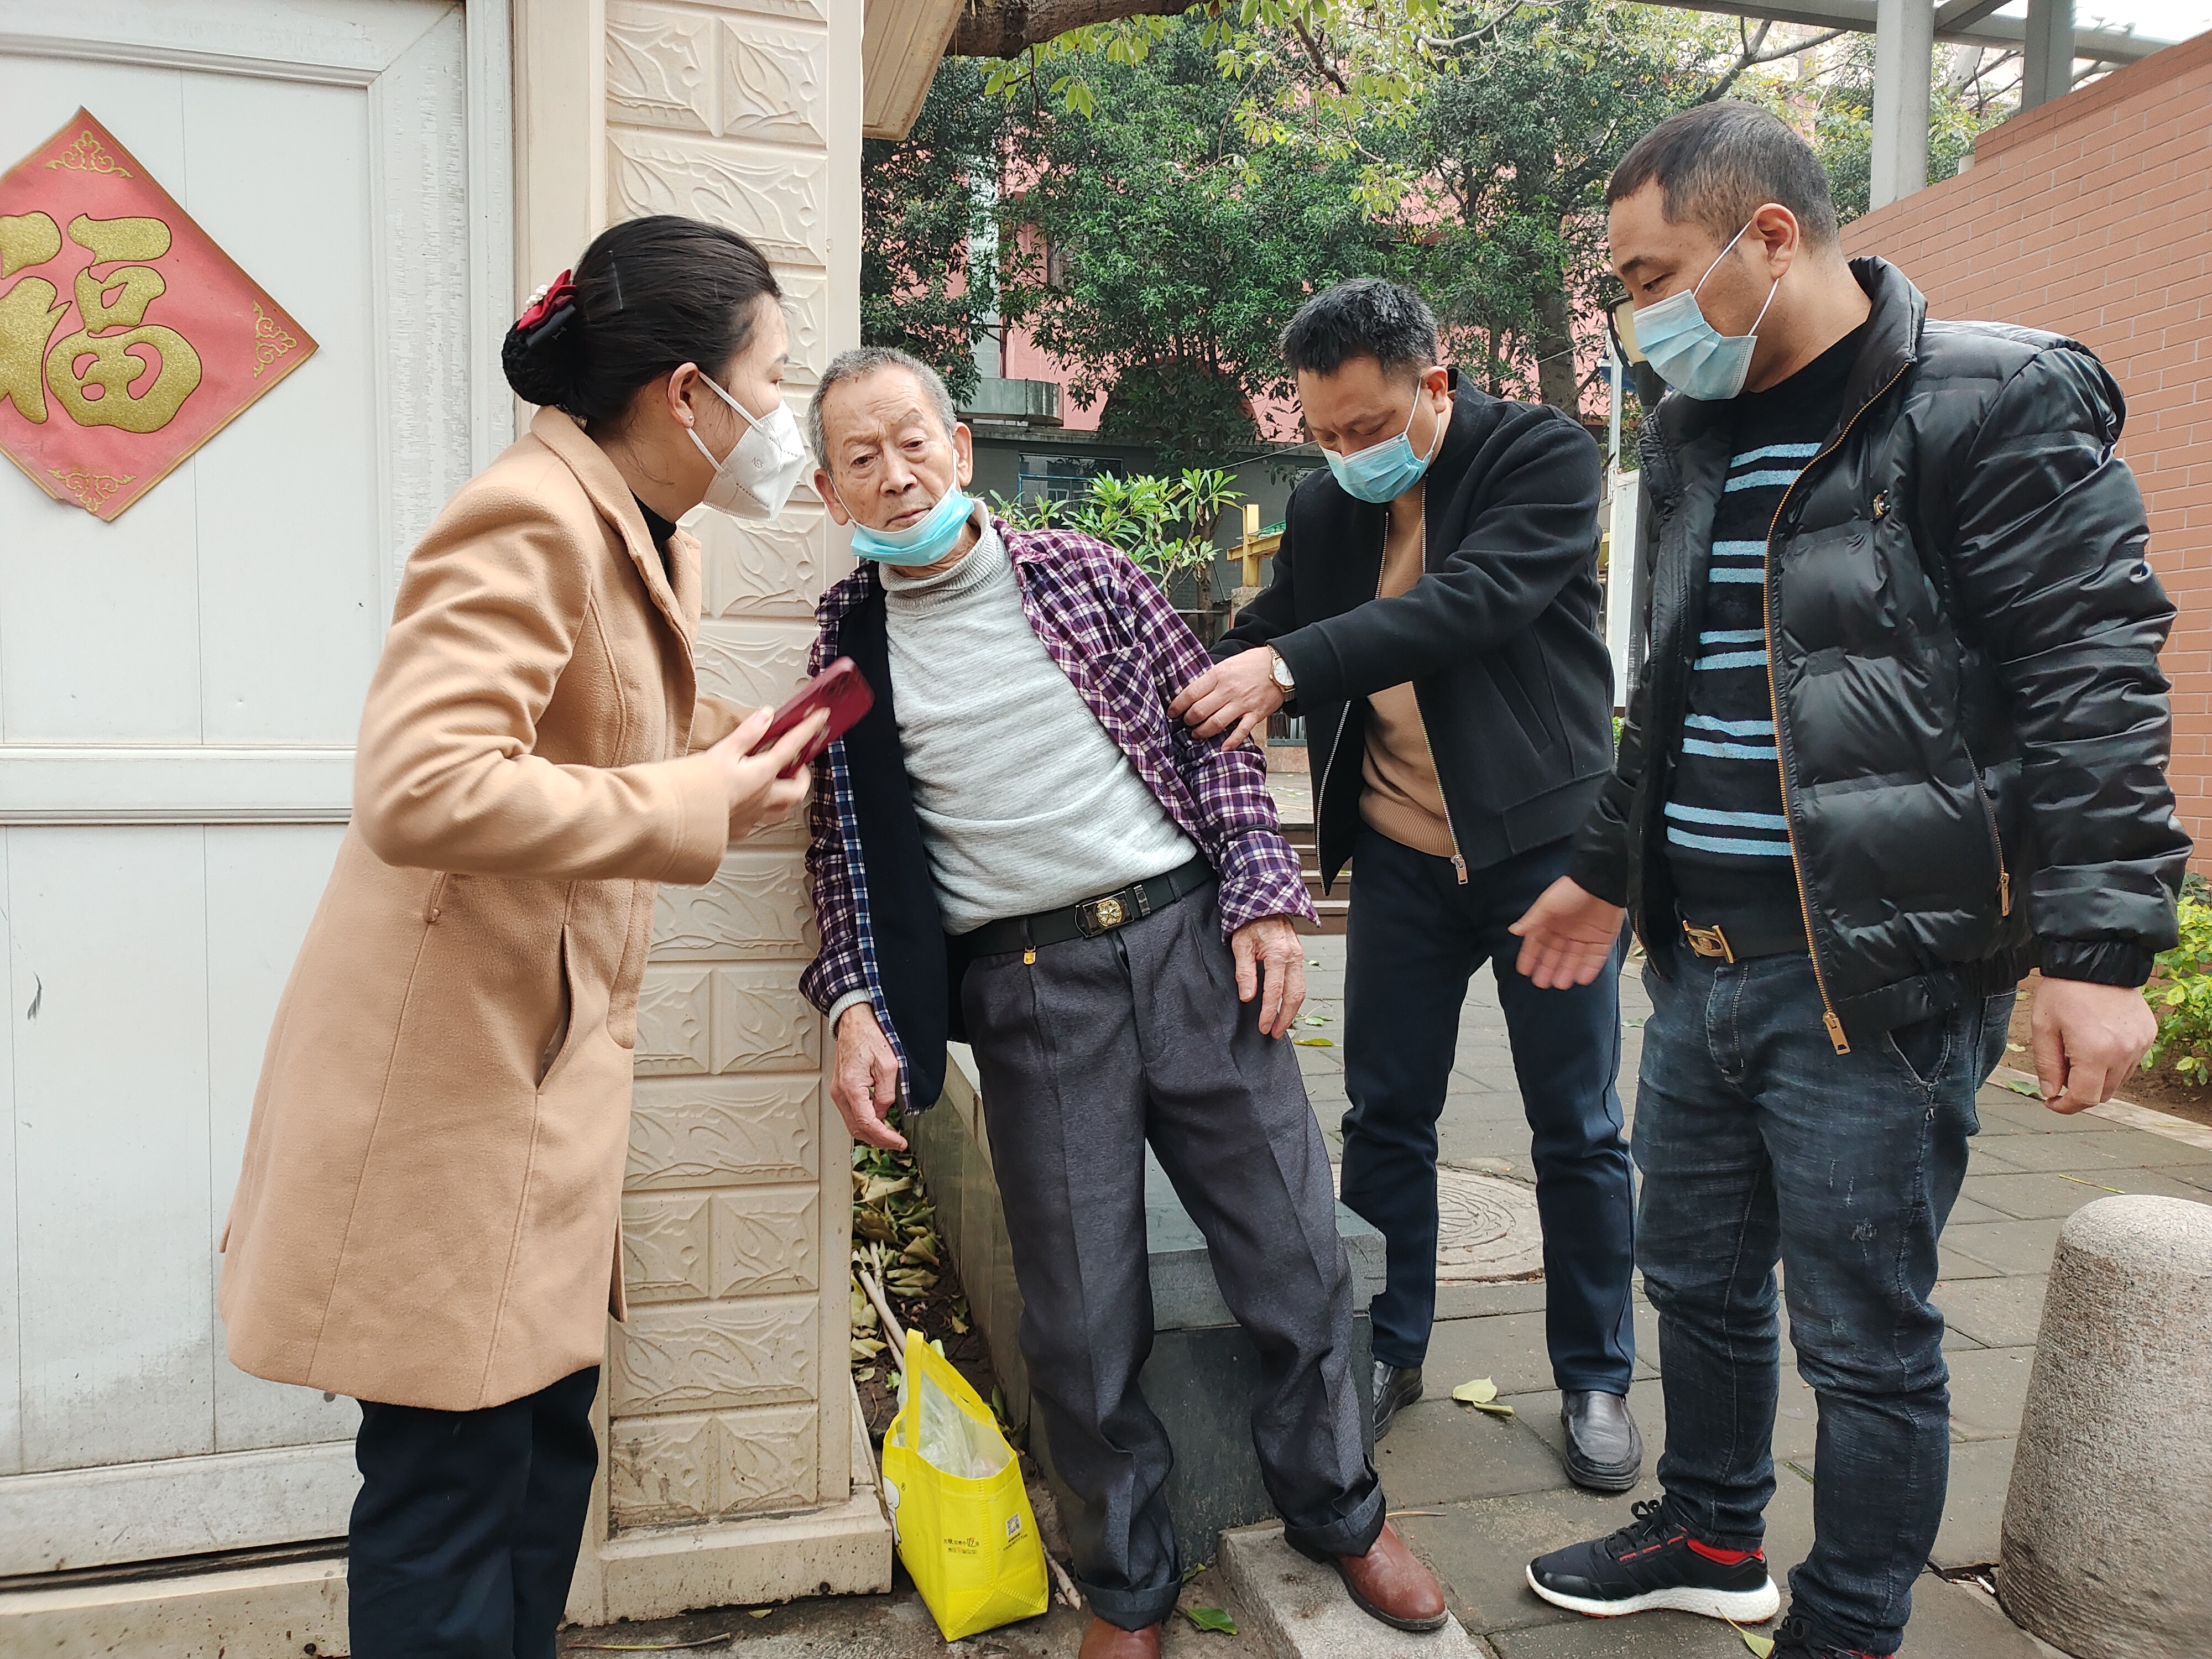 老人晕倒街头 市民热心救助